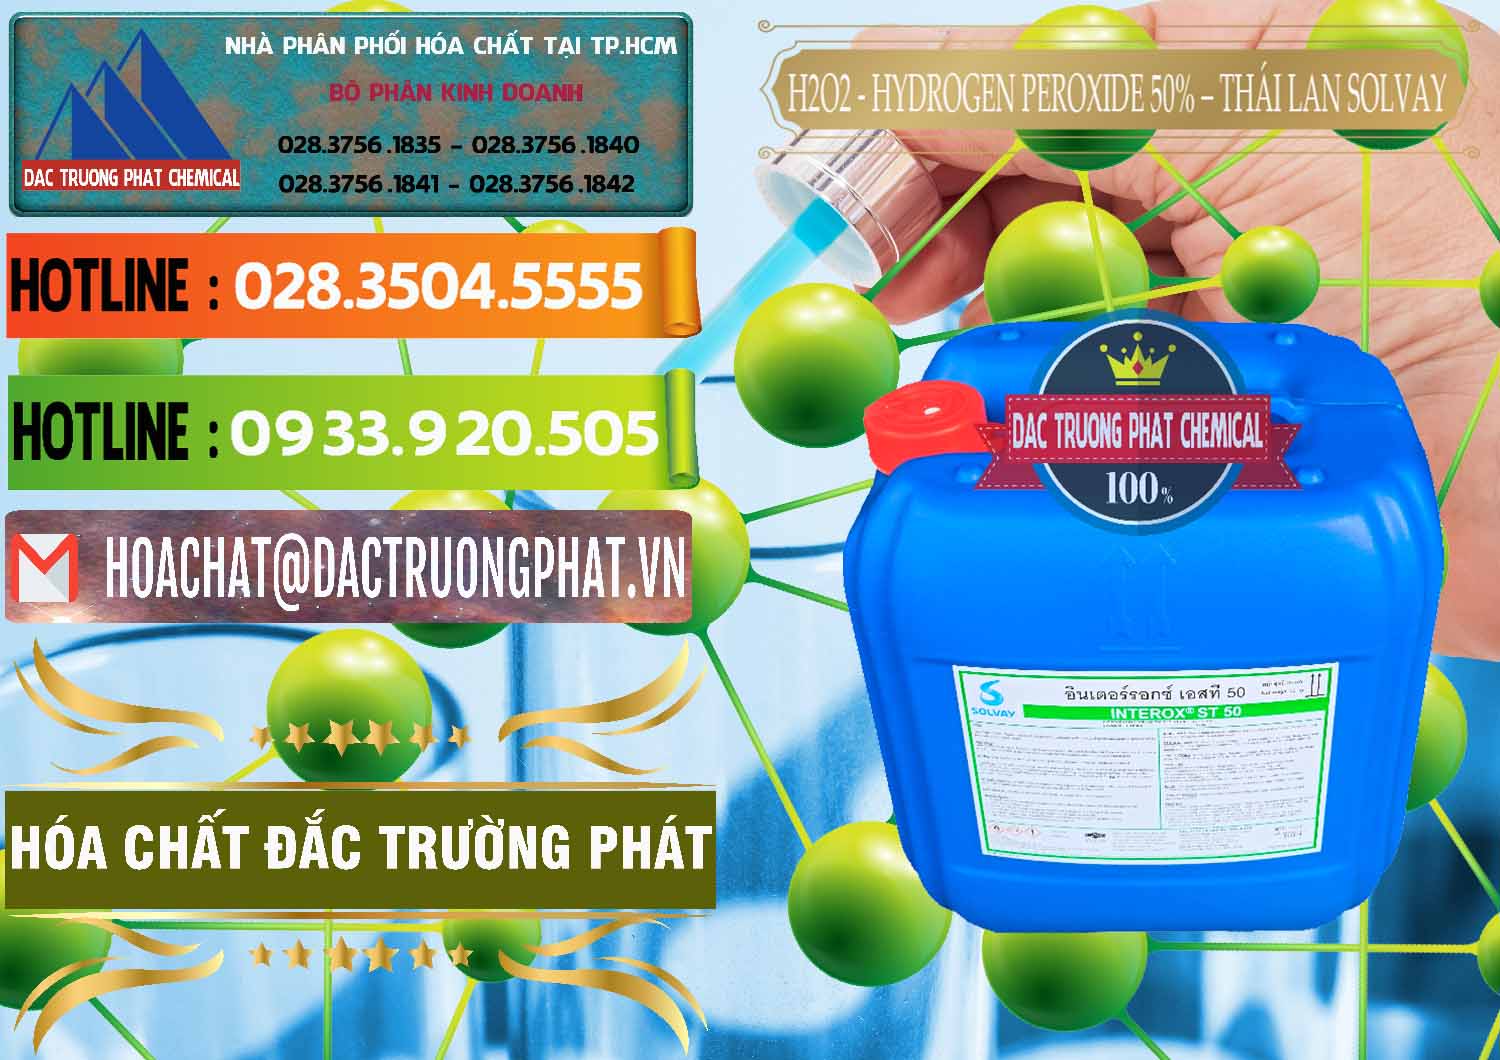 Đơn vị chuyên cung cấp _ bán H2O2 - Hydrogen Peroxide 50% Thái Lan Solvay - 0068 - Nơi chuyên cung cấp - kinh doanh hóa chất tại TP.HCM - cungcaphoachat.com.vn